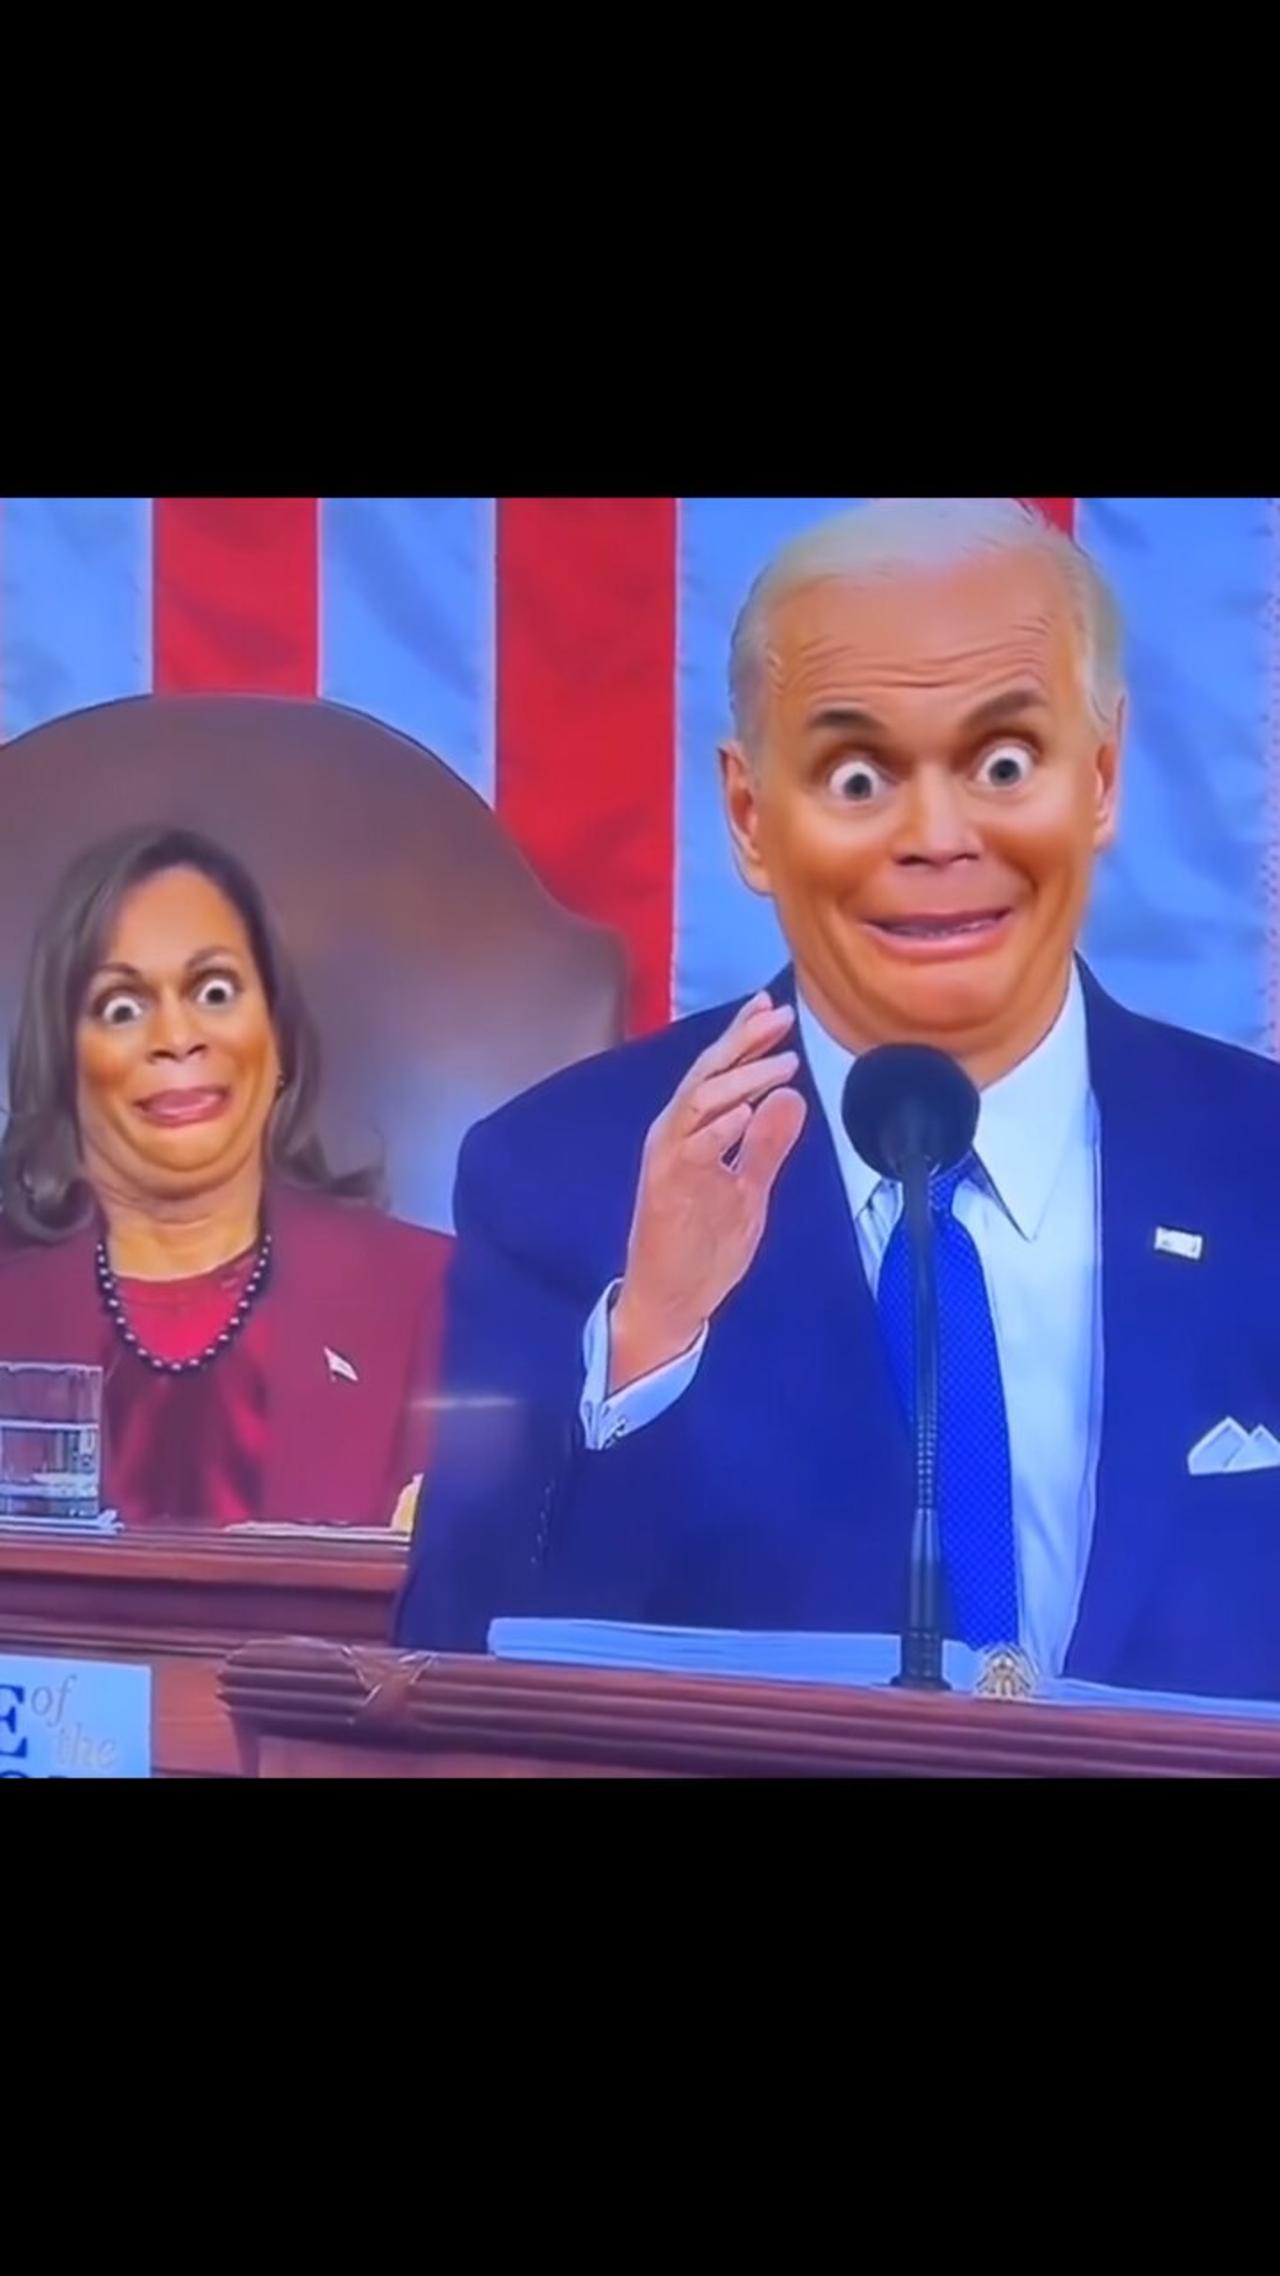 Biden is comical